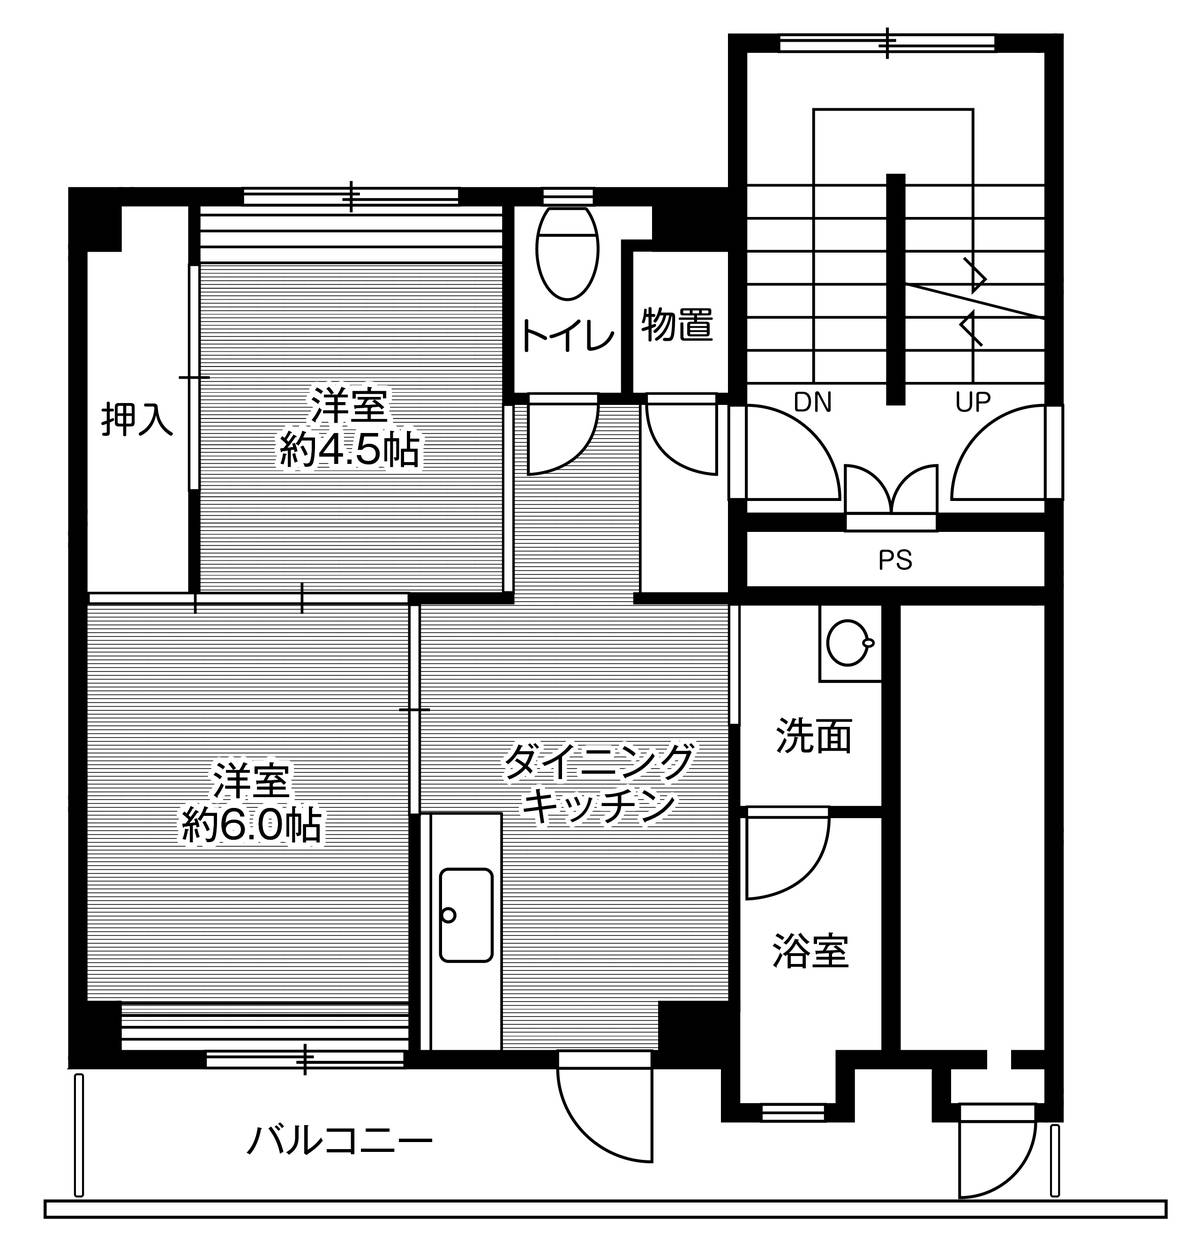 Sơ đồ phòng 2DK của Village House Koyama ở Tottori-shi